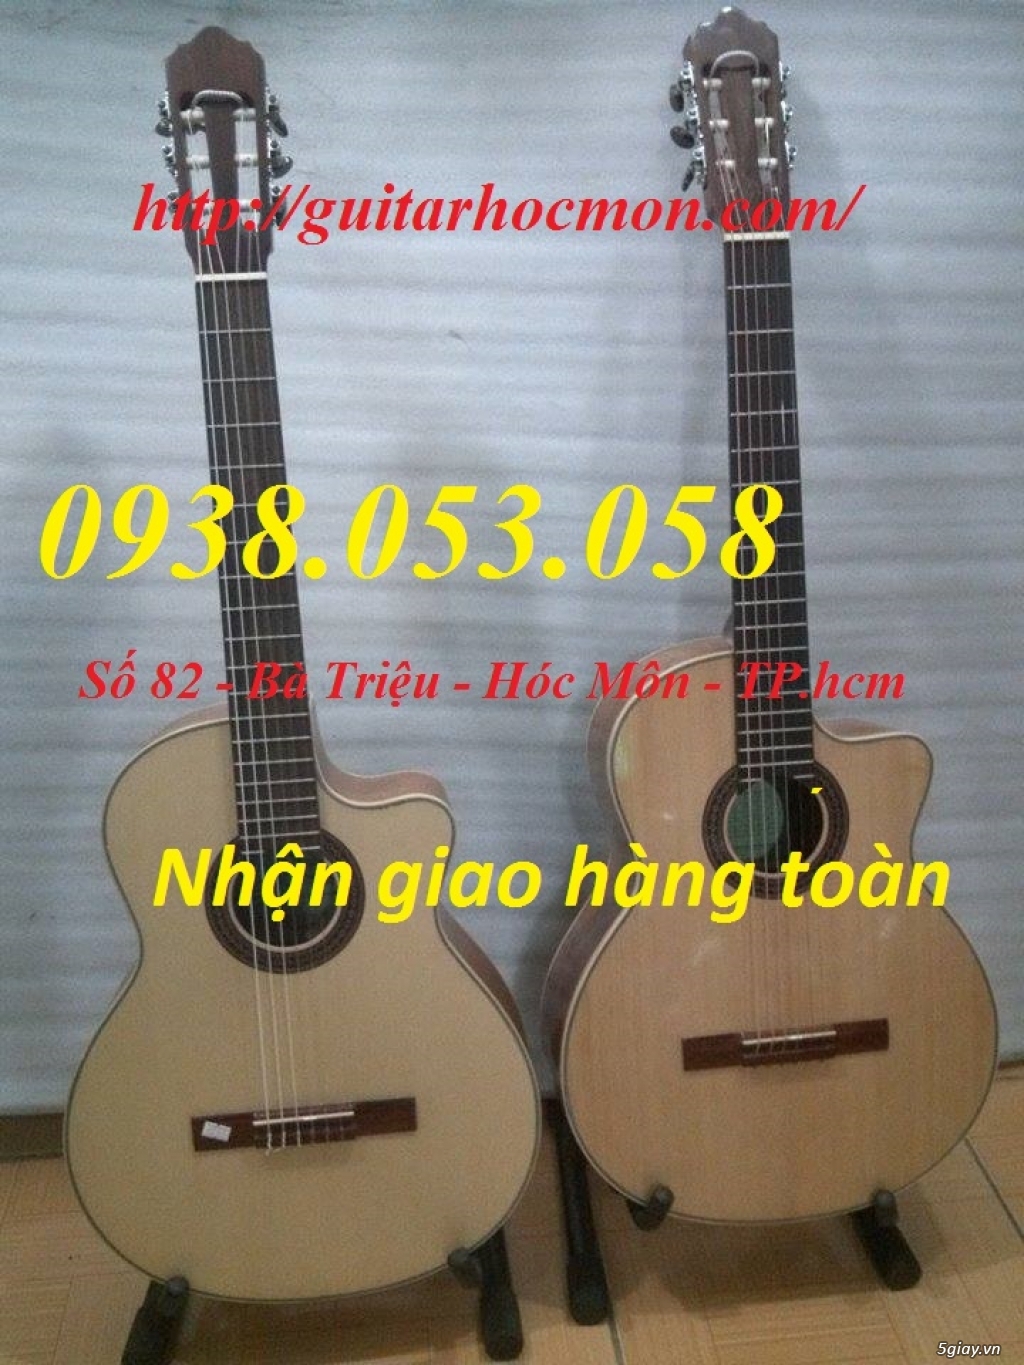 Bán Đàn Guitar, Đàn Tranh, giá rẻ tại cửa hàng nhạc cụ mới HÓC MÔN - 9